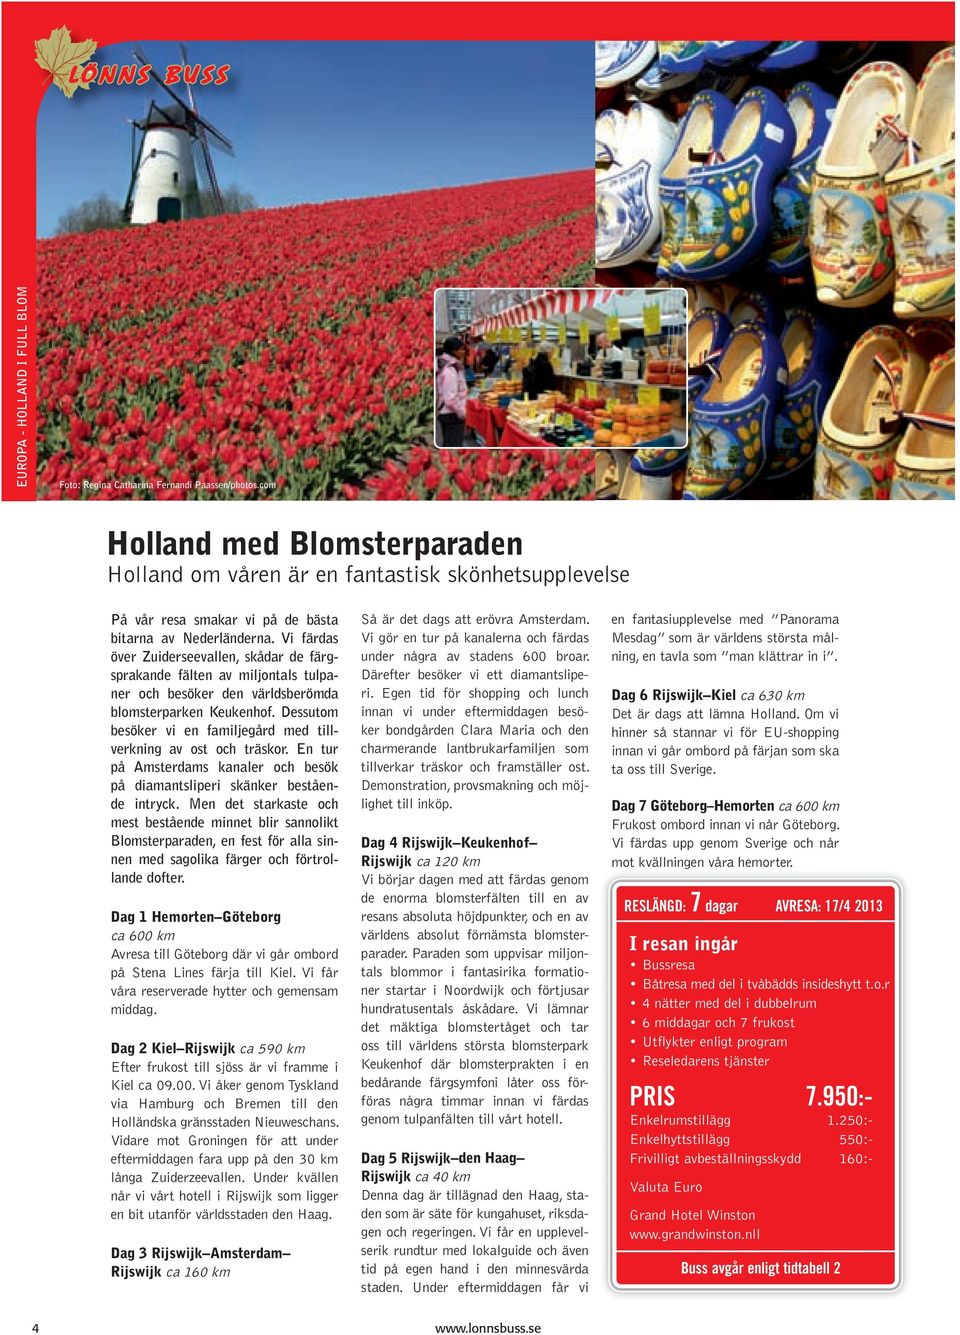 Vi färdas över Zuiderseevallen, skådar de färgsprakande fälten av miljontals tulpaner och besöker den världsberömda blomsterparken Keukenhof.